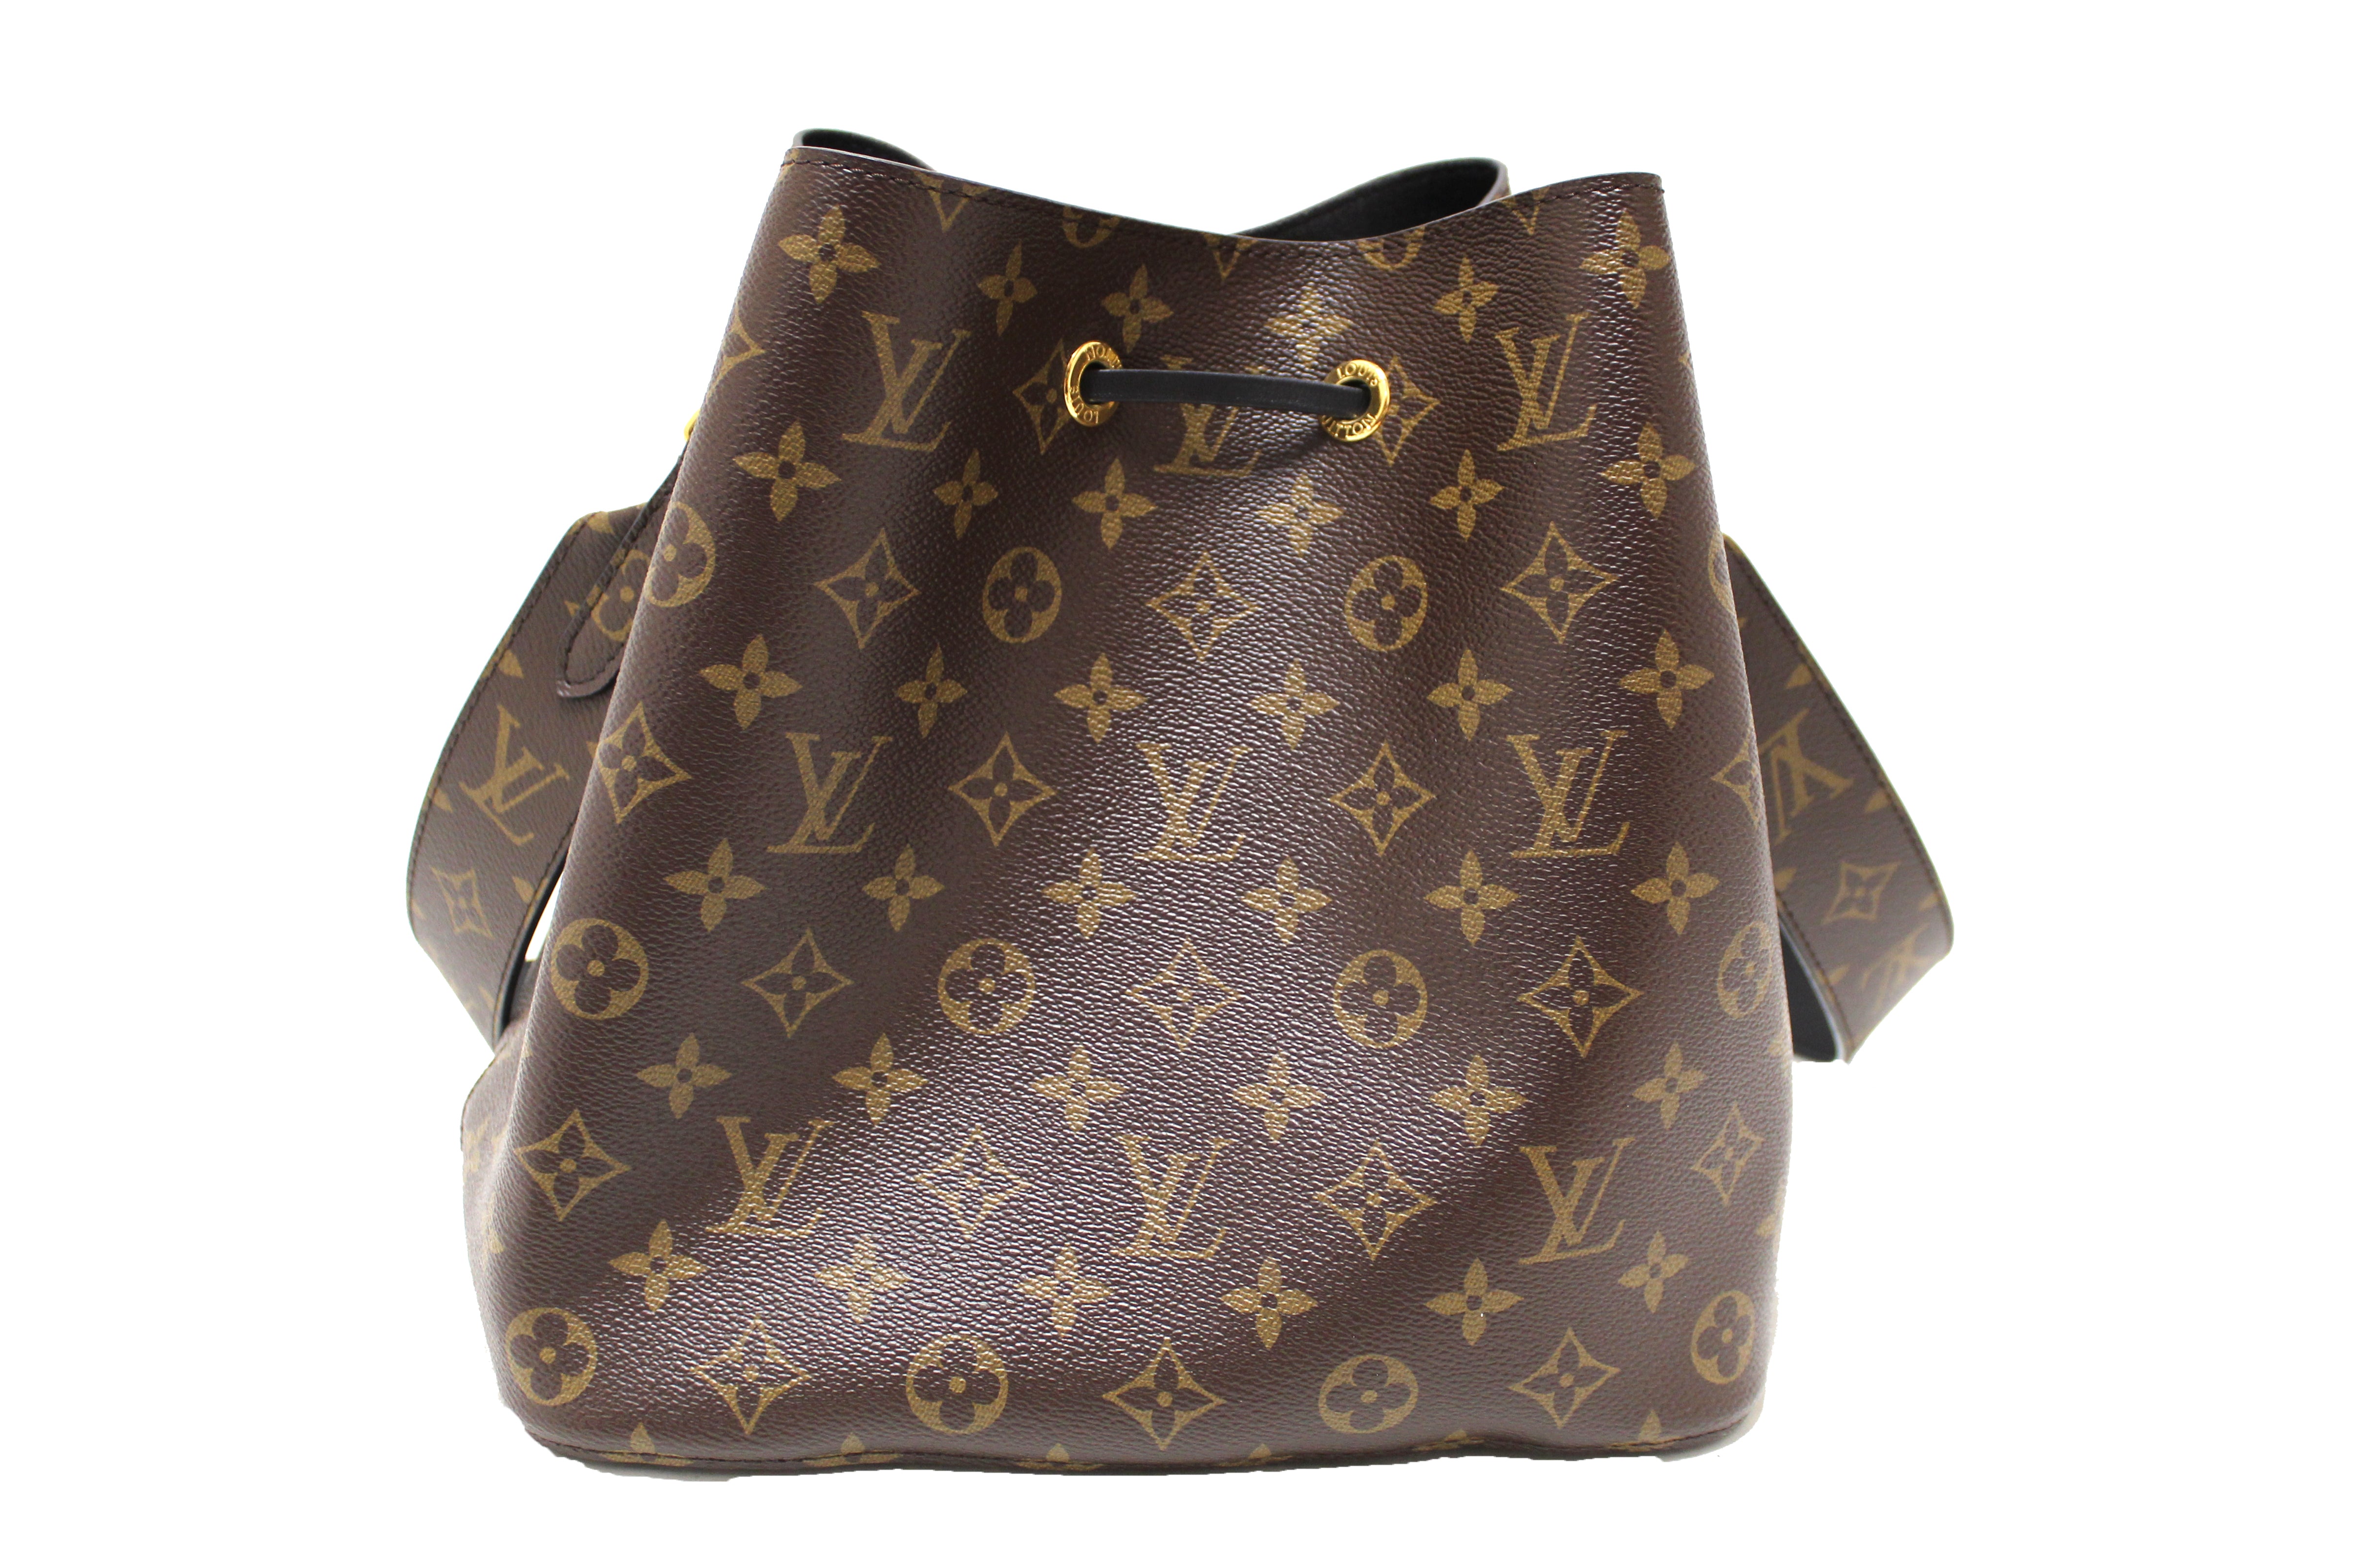 Authentic Louis Vuitton Classic Monogram Black NeoNoe Shoulder Bag with Monogram Bandouliere Shoulder Strap